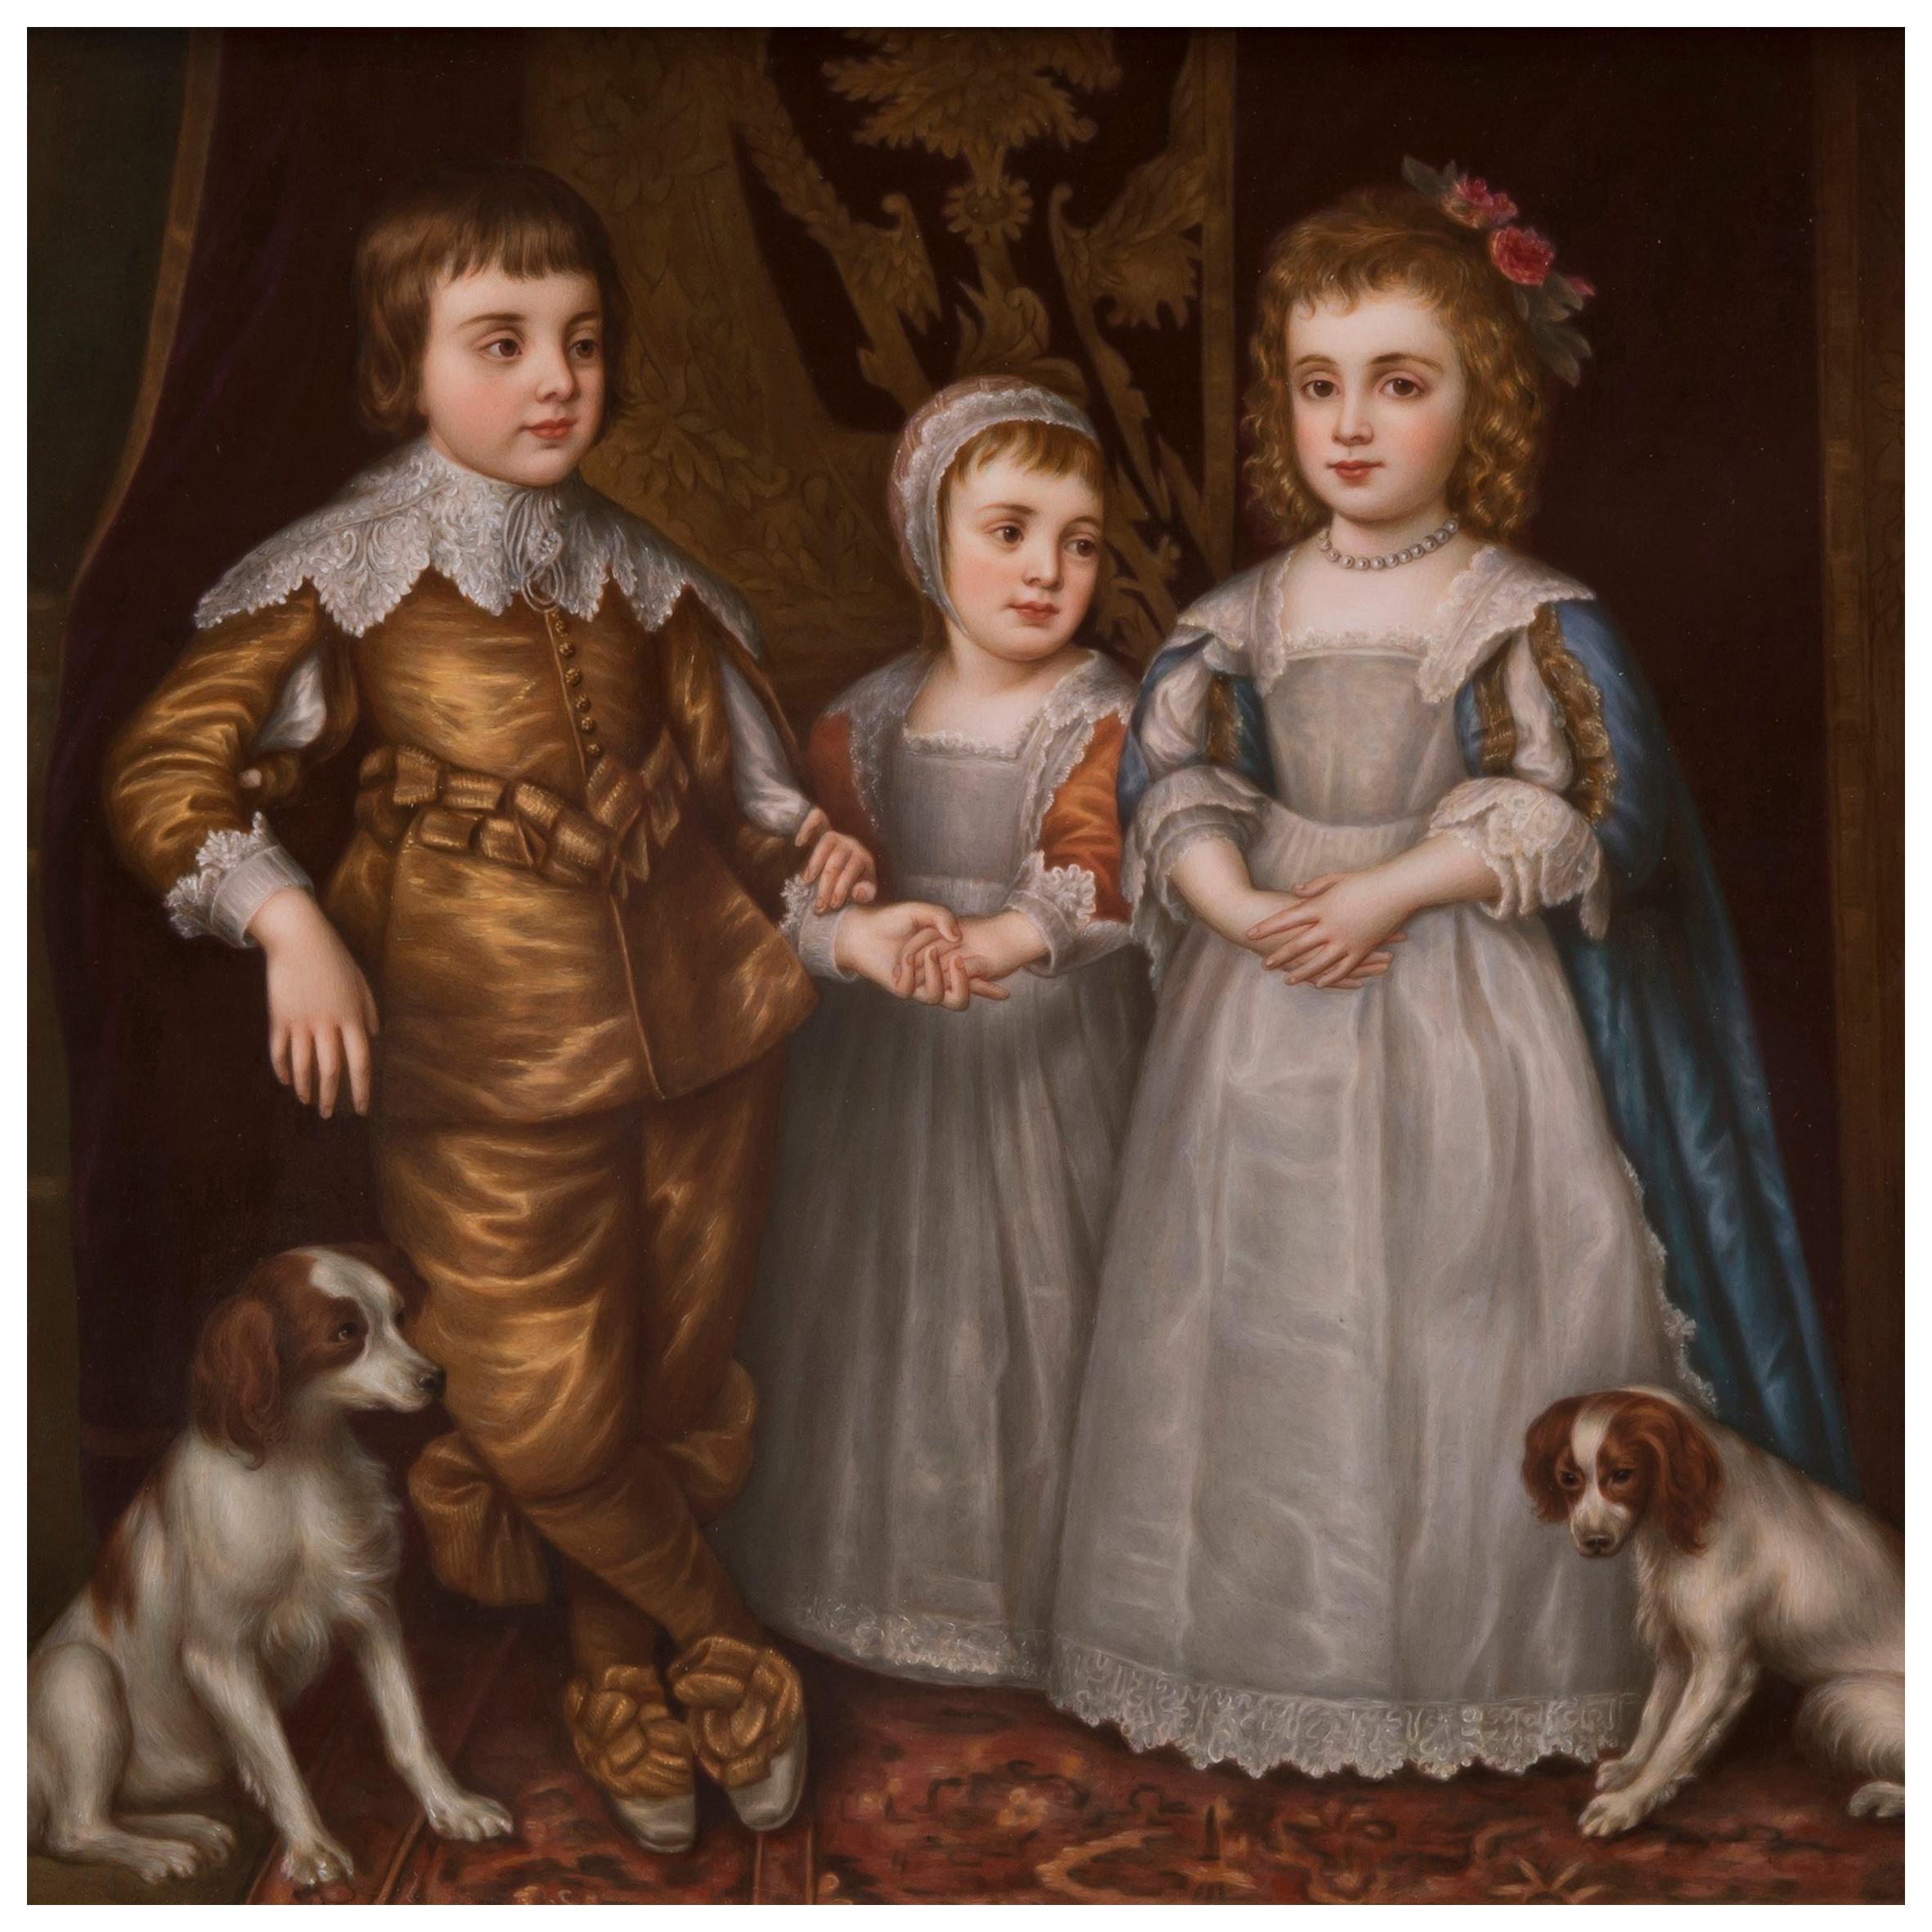 Plaque en porcelaine de la KPM représentant les trois enfants aînés de Charles Ier, d'après le tableau de Sir Anthony van Dyck.

Allemand, vers 1890.

La plaque rectangulaire délicatement peinte s'inscrit dans un cadre en bois doré avec moulures